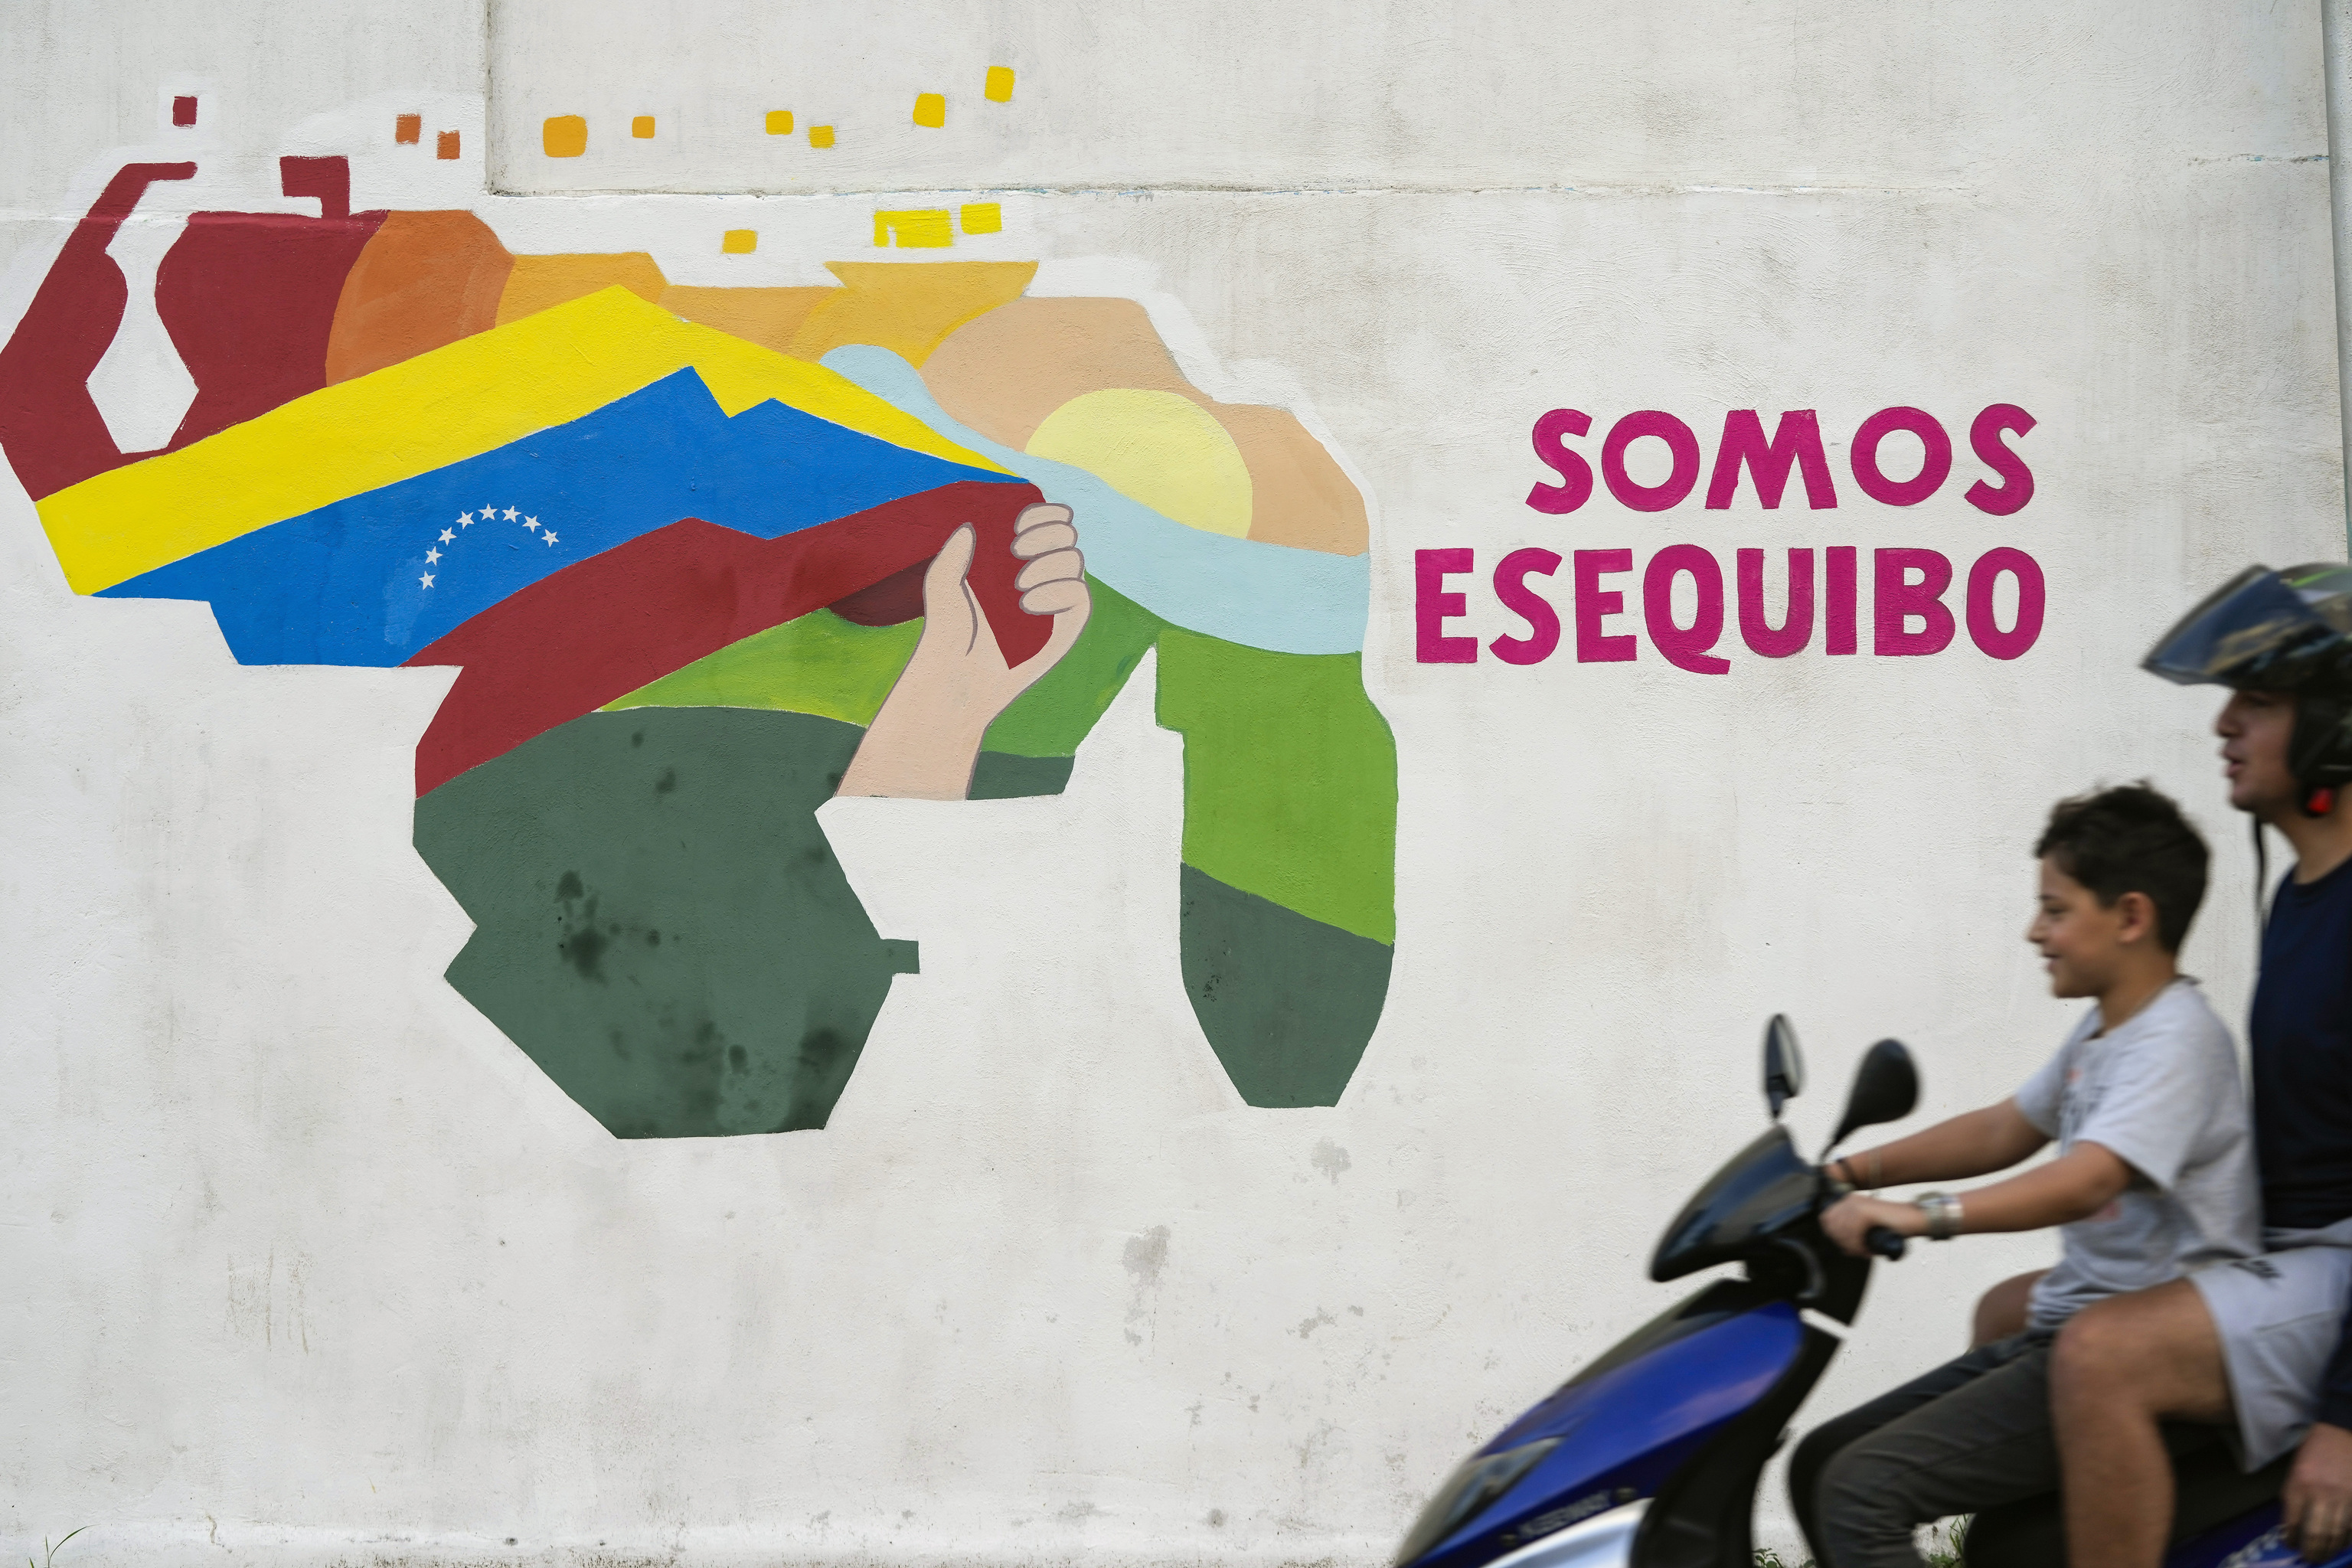 Un nio conduce una motocicleta por delante de un mural con el mapa de Venezuela, que incluye el territorio de Esequibo, en el vecindario 23 de Enero de Caracas, Venezuela, el 11 de diciembre de 2023. (AP Foto/Matas Delacroix)